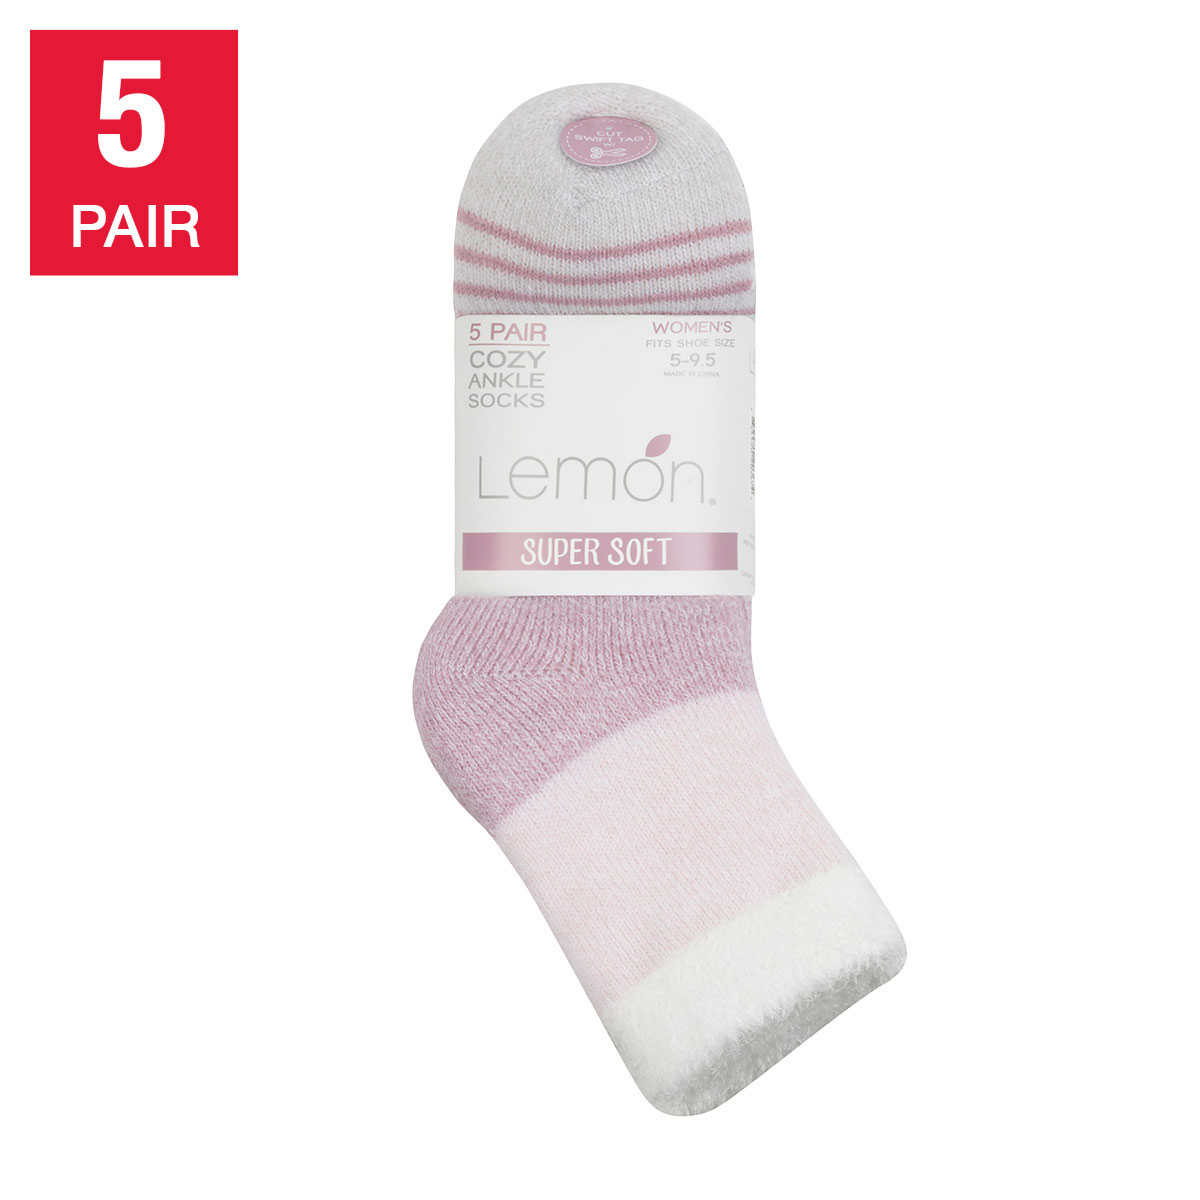 Lemon 7 Days Of Cozy Sock Gift Set - Women's Socks in Tan Combo